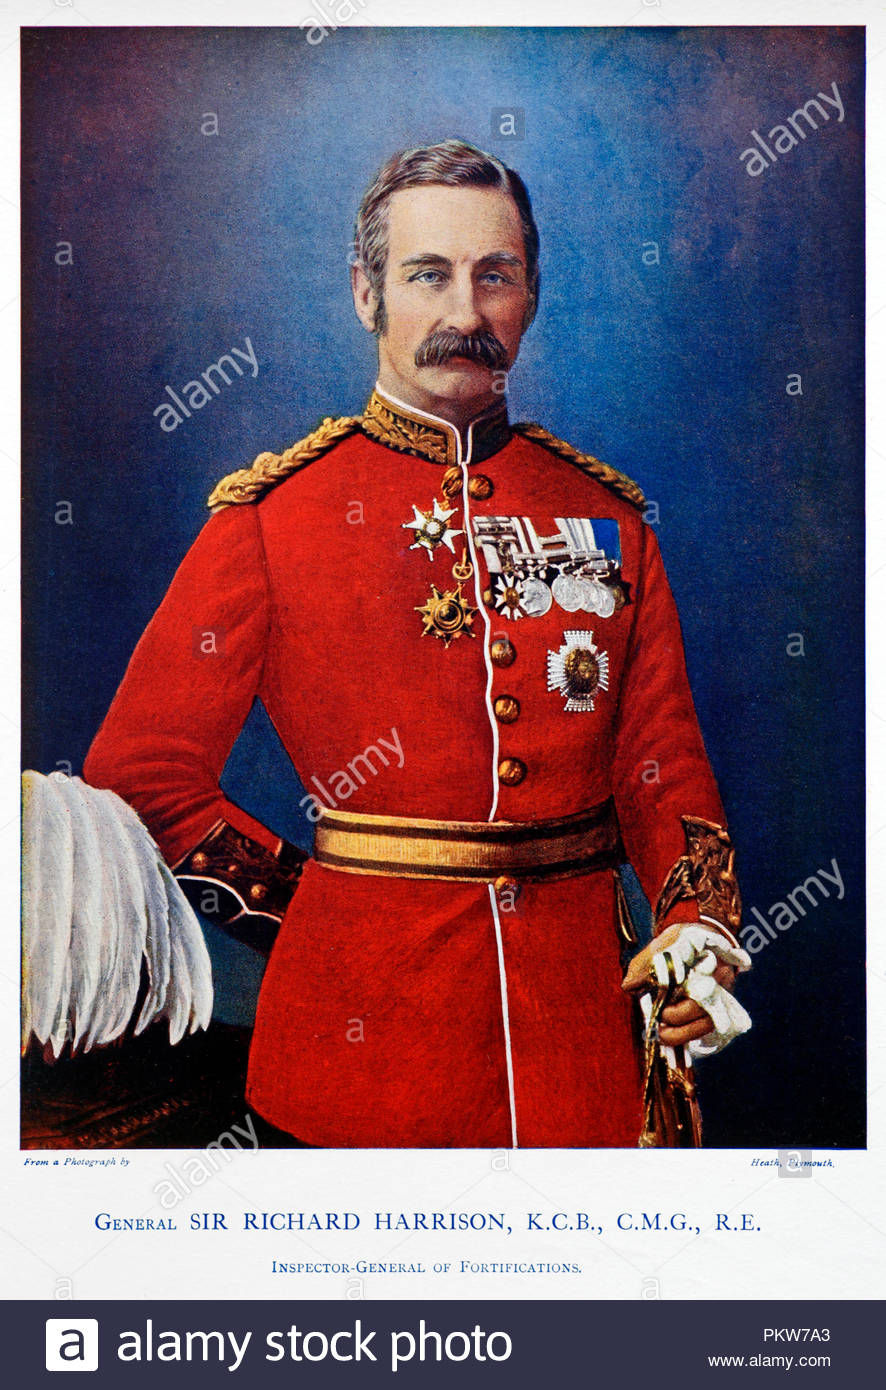 Le général Sir Richard Harrison GCB, CMG, KStJ, DL, 1837 - 1931, était un officier de l'Armée britannique et l'ingénieur. Illustration couleur à partir de 1900 Banque D'Images